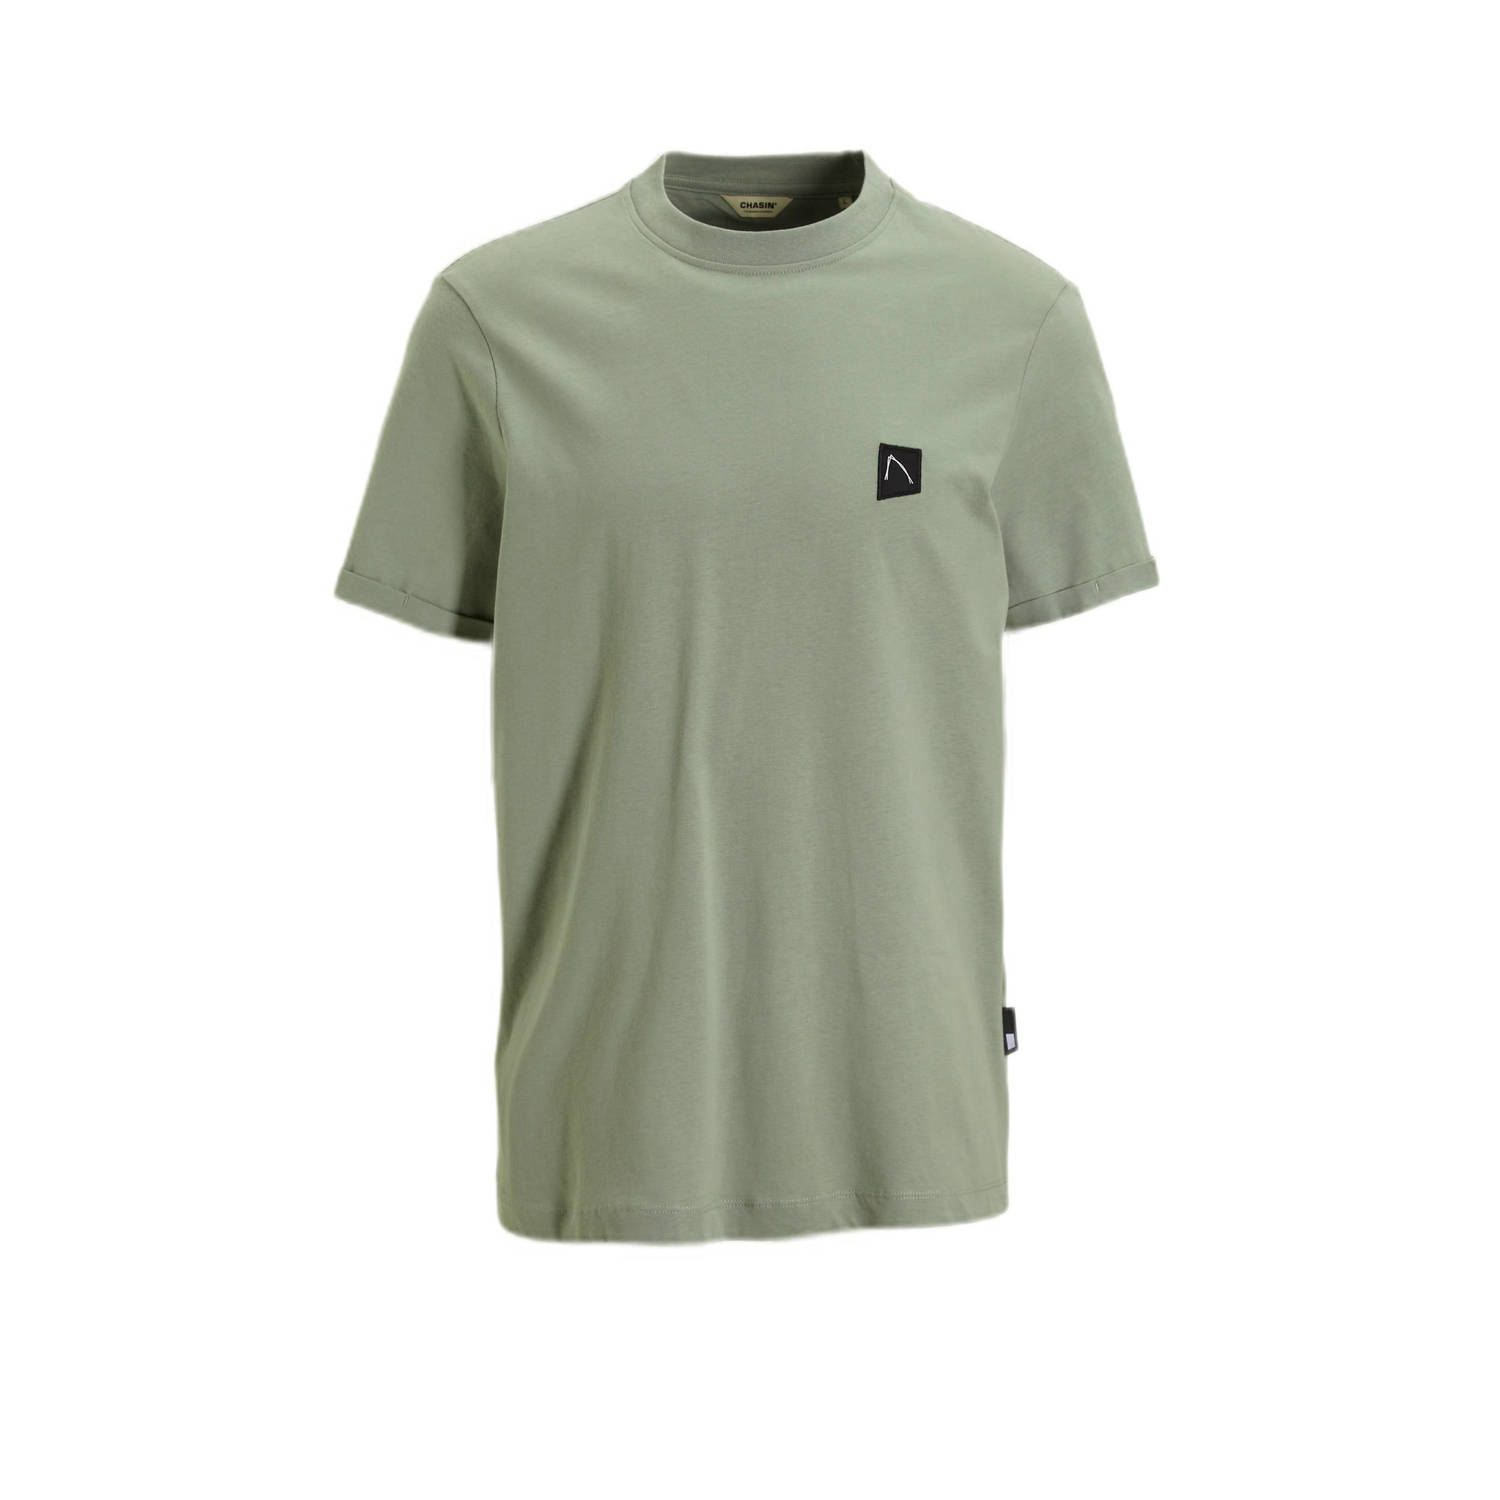 CHASIN' regular fit T-shirt Brody met logo m. green